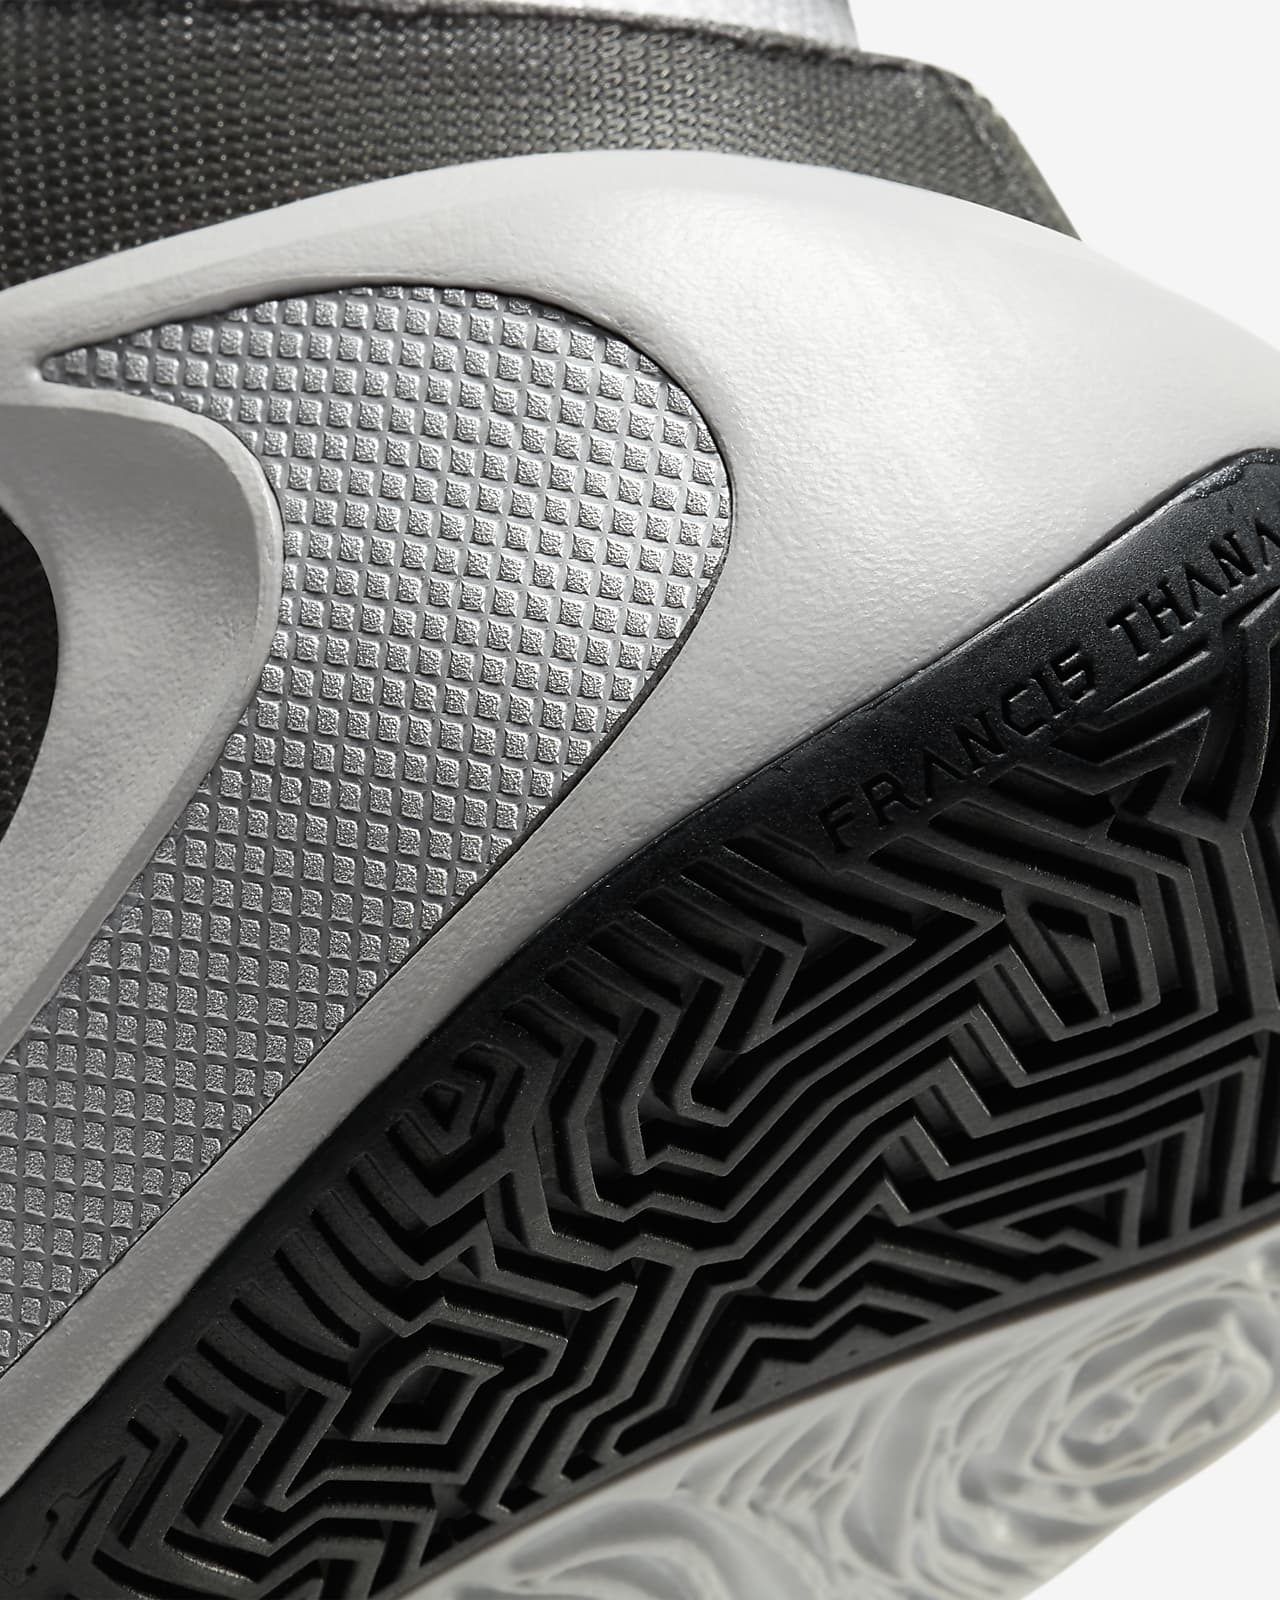 Sneakers Release Nike Zoom Freak 1 Nike Kyrie 6 and